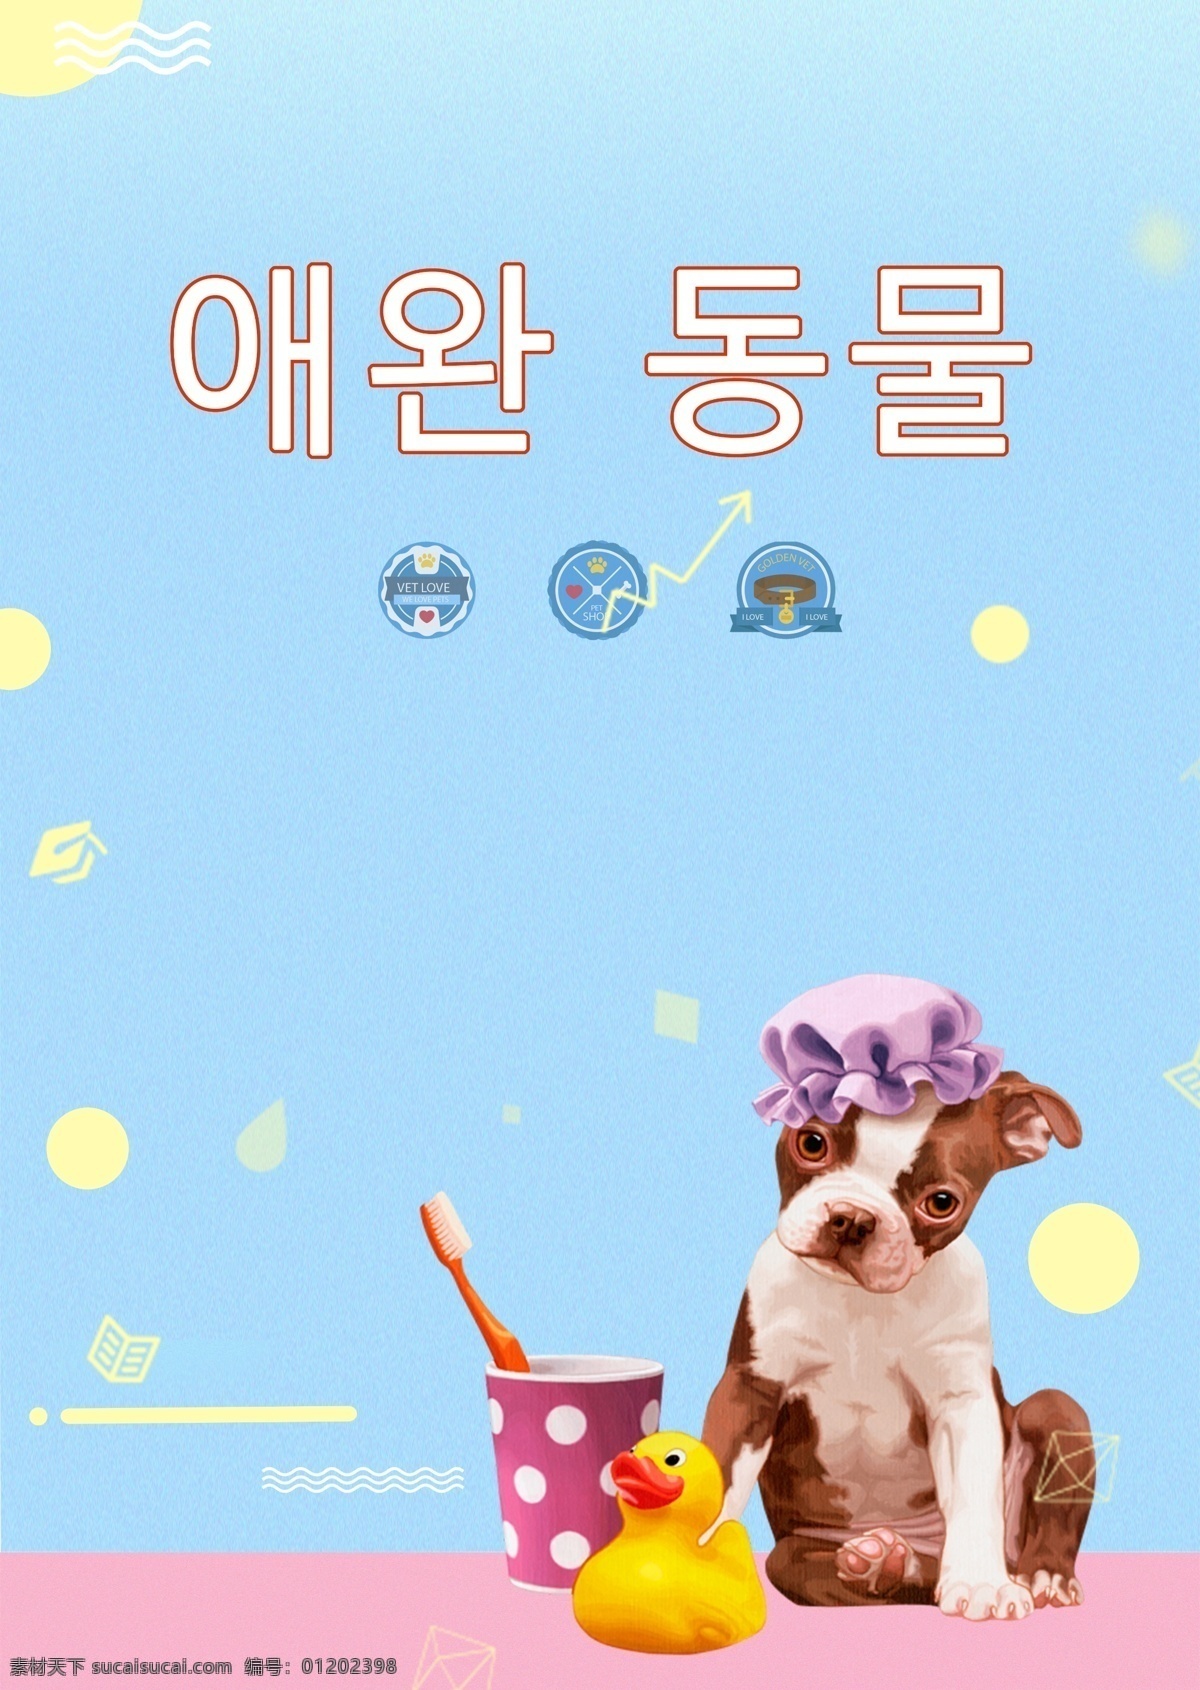 懒惰 小狗 宠物 韩国 海报 2018 年 谈谈关于 懒 拟人 可爱 大韩民国